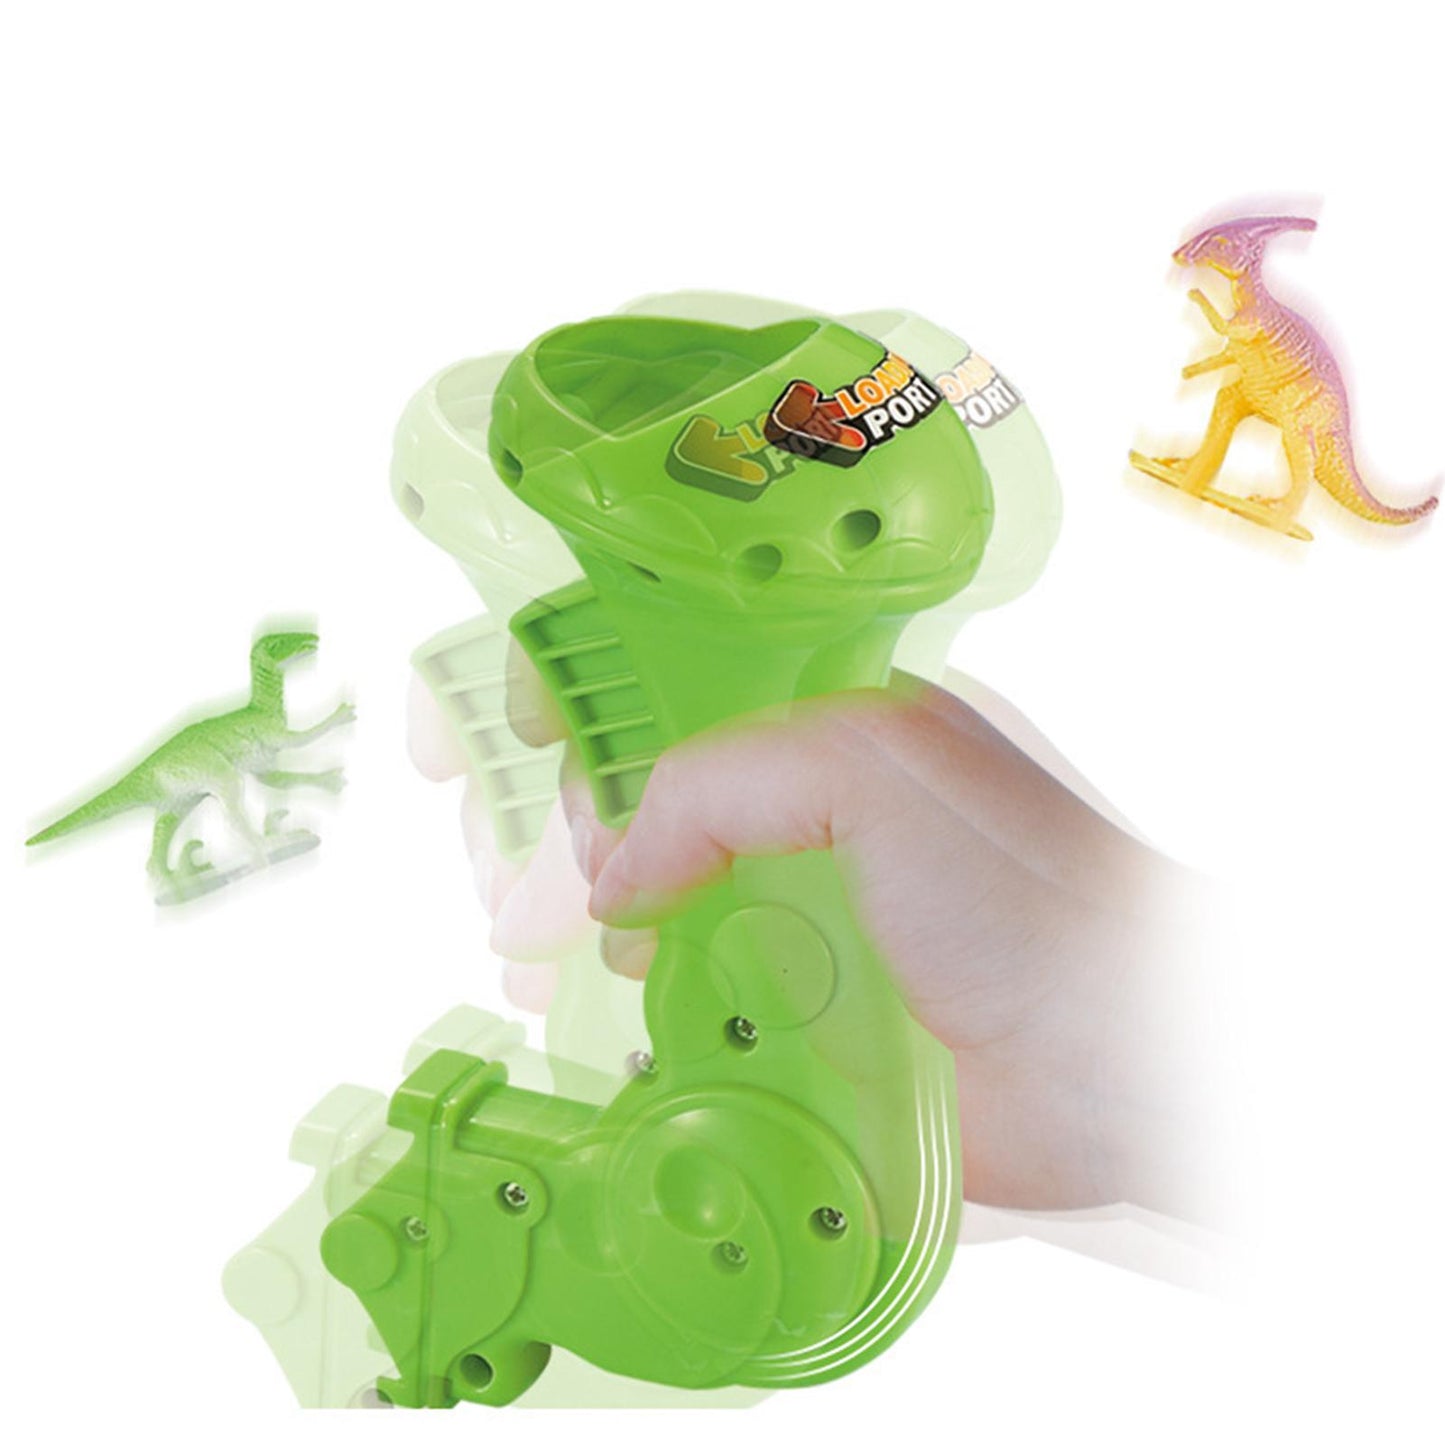 Dinosaur Shooting Toys for Kids